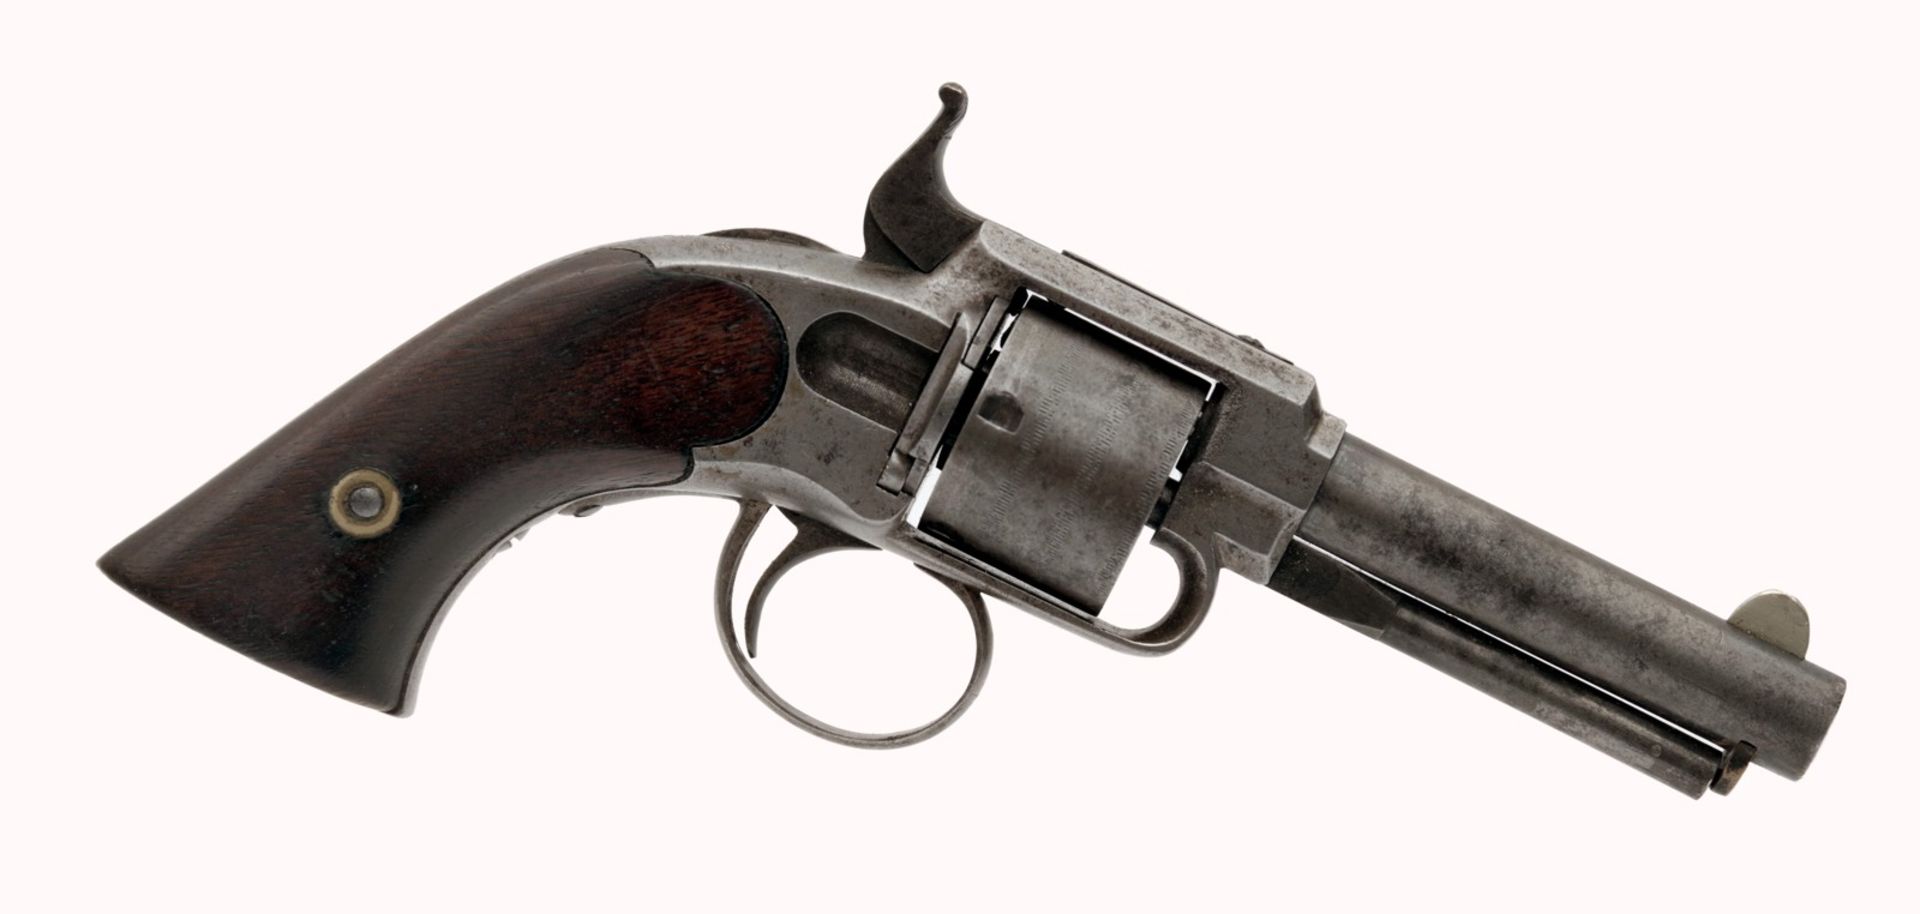 James Warner Pocket Model Revolver in a Wooden Box - Image 3 of 5